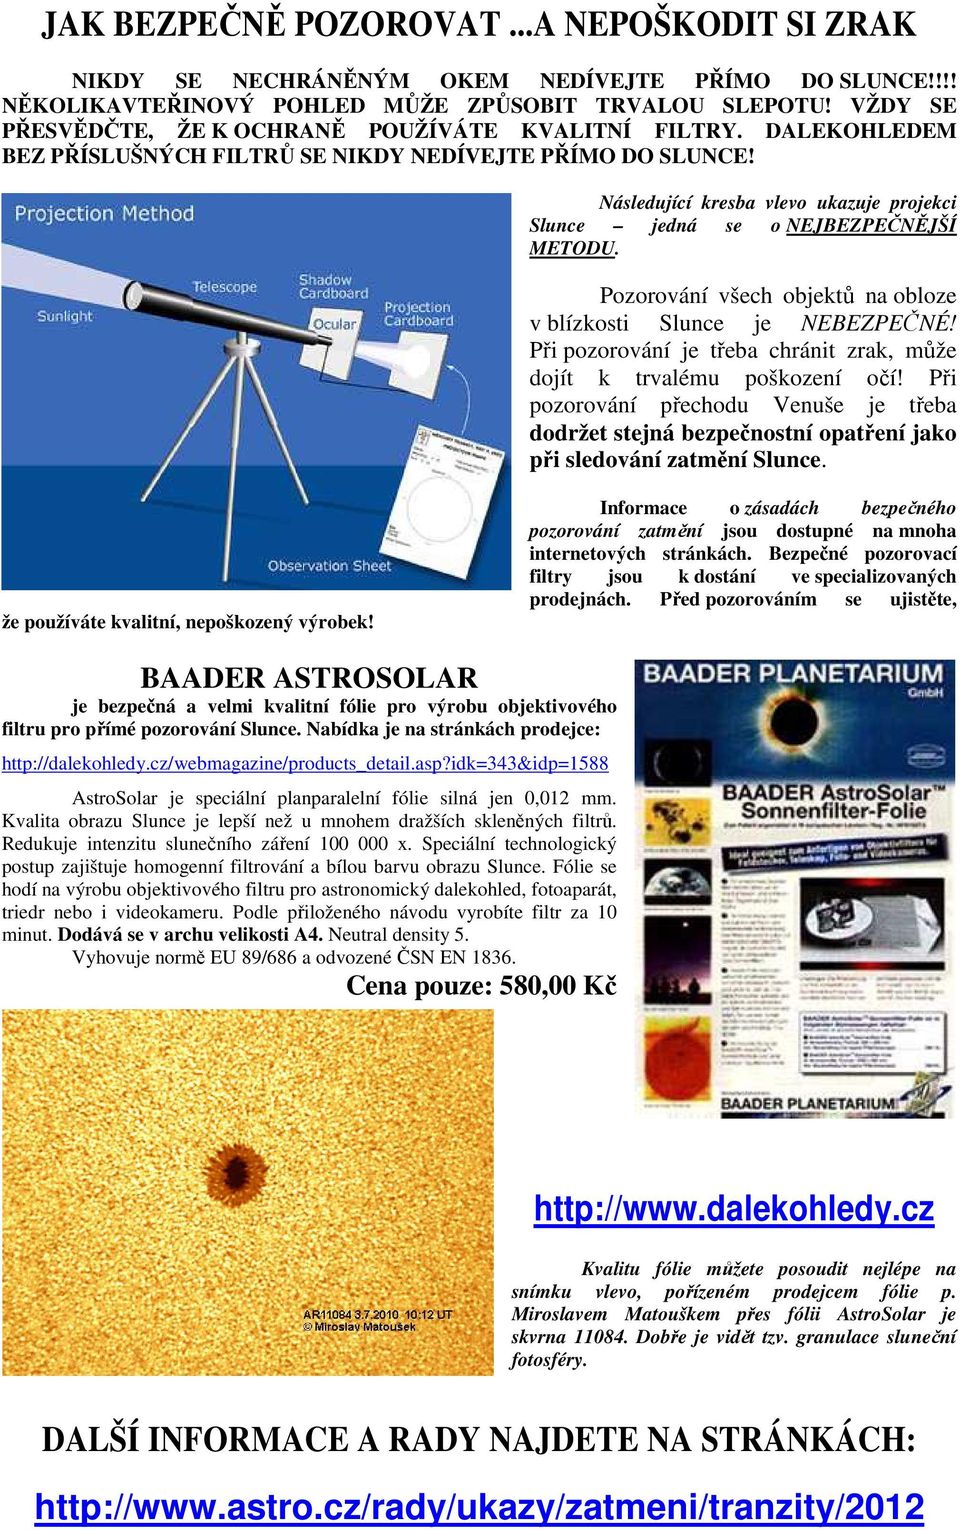 Následující kresba vlevo ukazuje projekci Slunce jedná se o NEJBEZPEČNĚJŠÍ METODU. Pozorování všech objektů na obloze v blízkosti Slunce je NEBEZPEČNÉ!